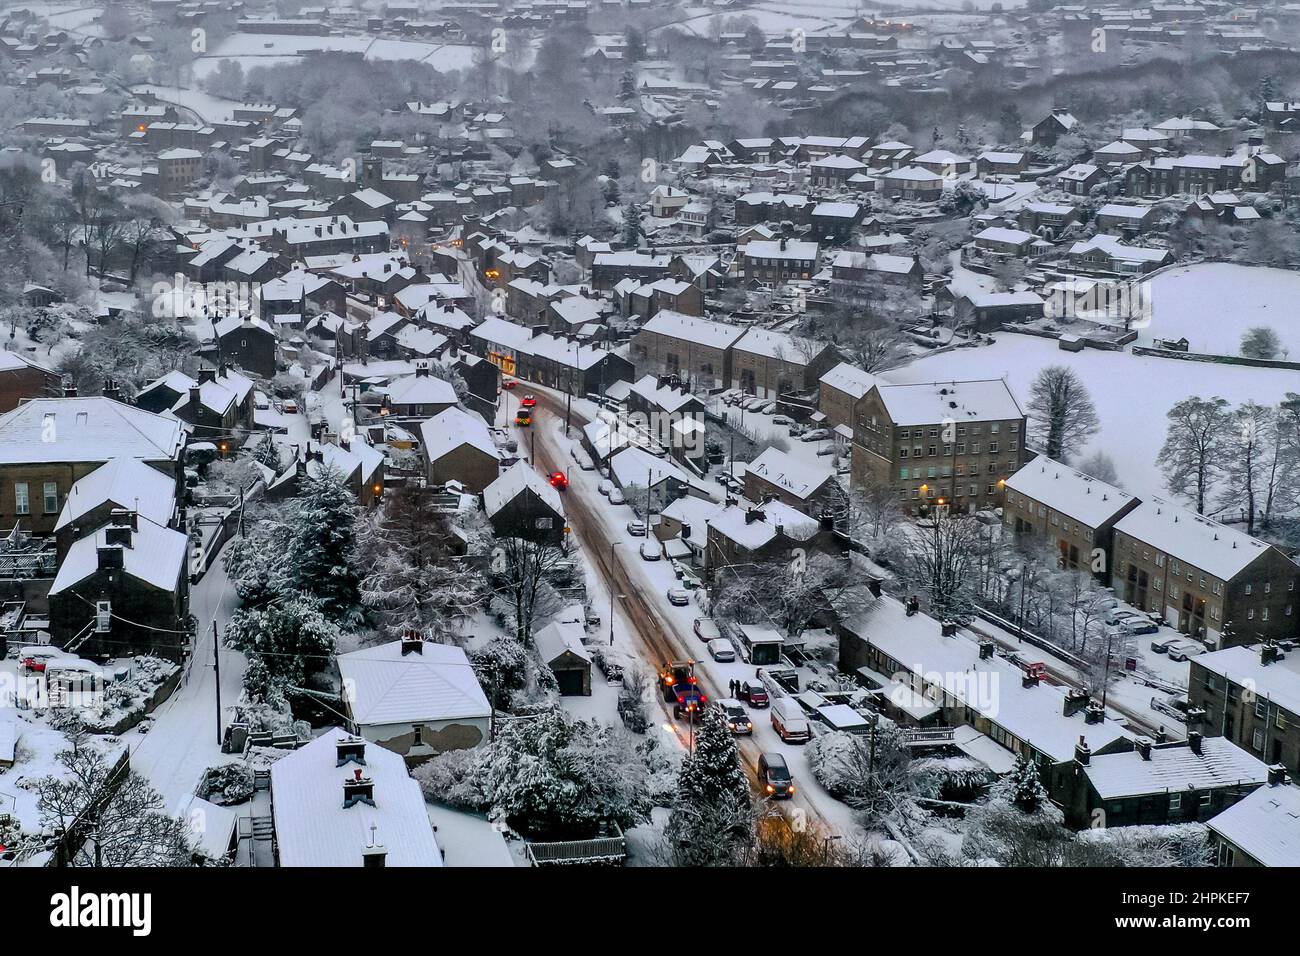 Holmfirth, eine West Yorkshire Market Town am Fuße der Pennines, ist von winterlichen Wetterbedingungen betroffen. Autos kämpfen um den Schlupf Stockfoto